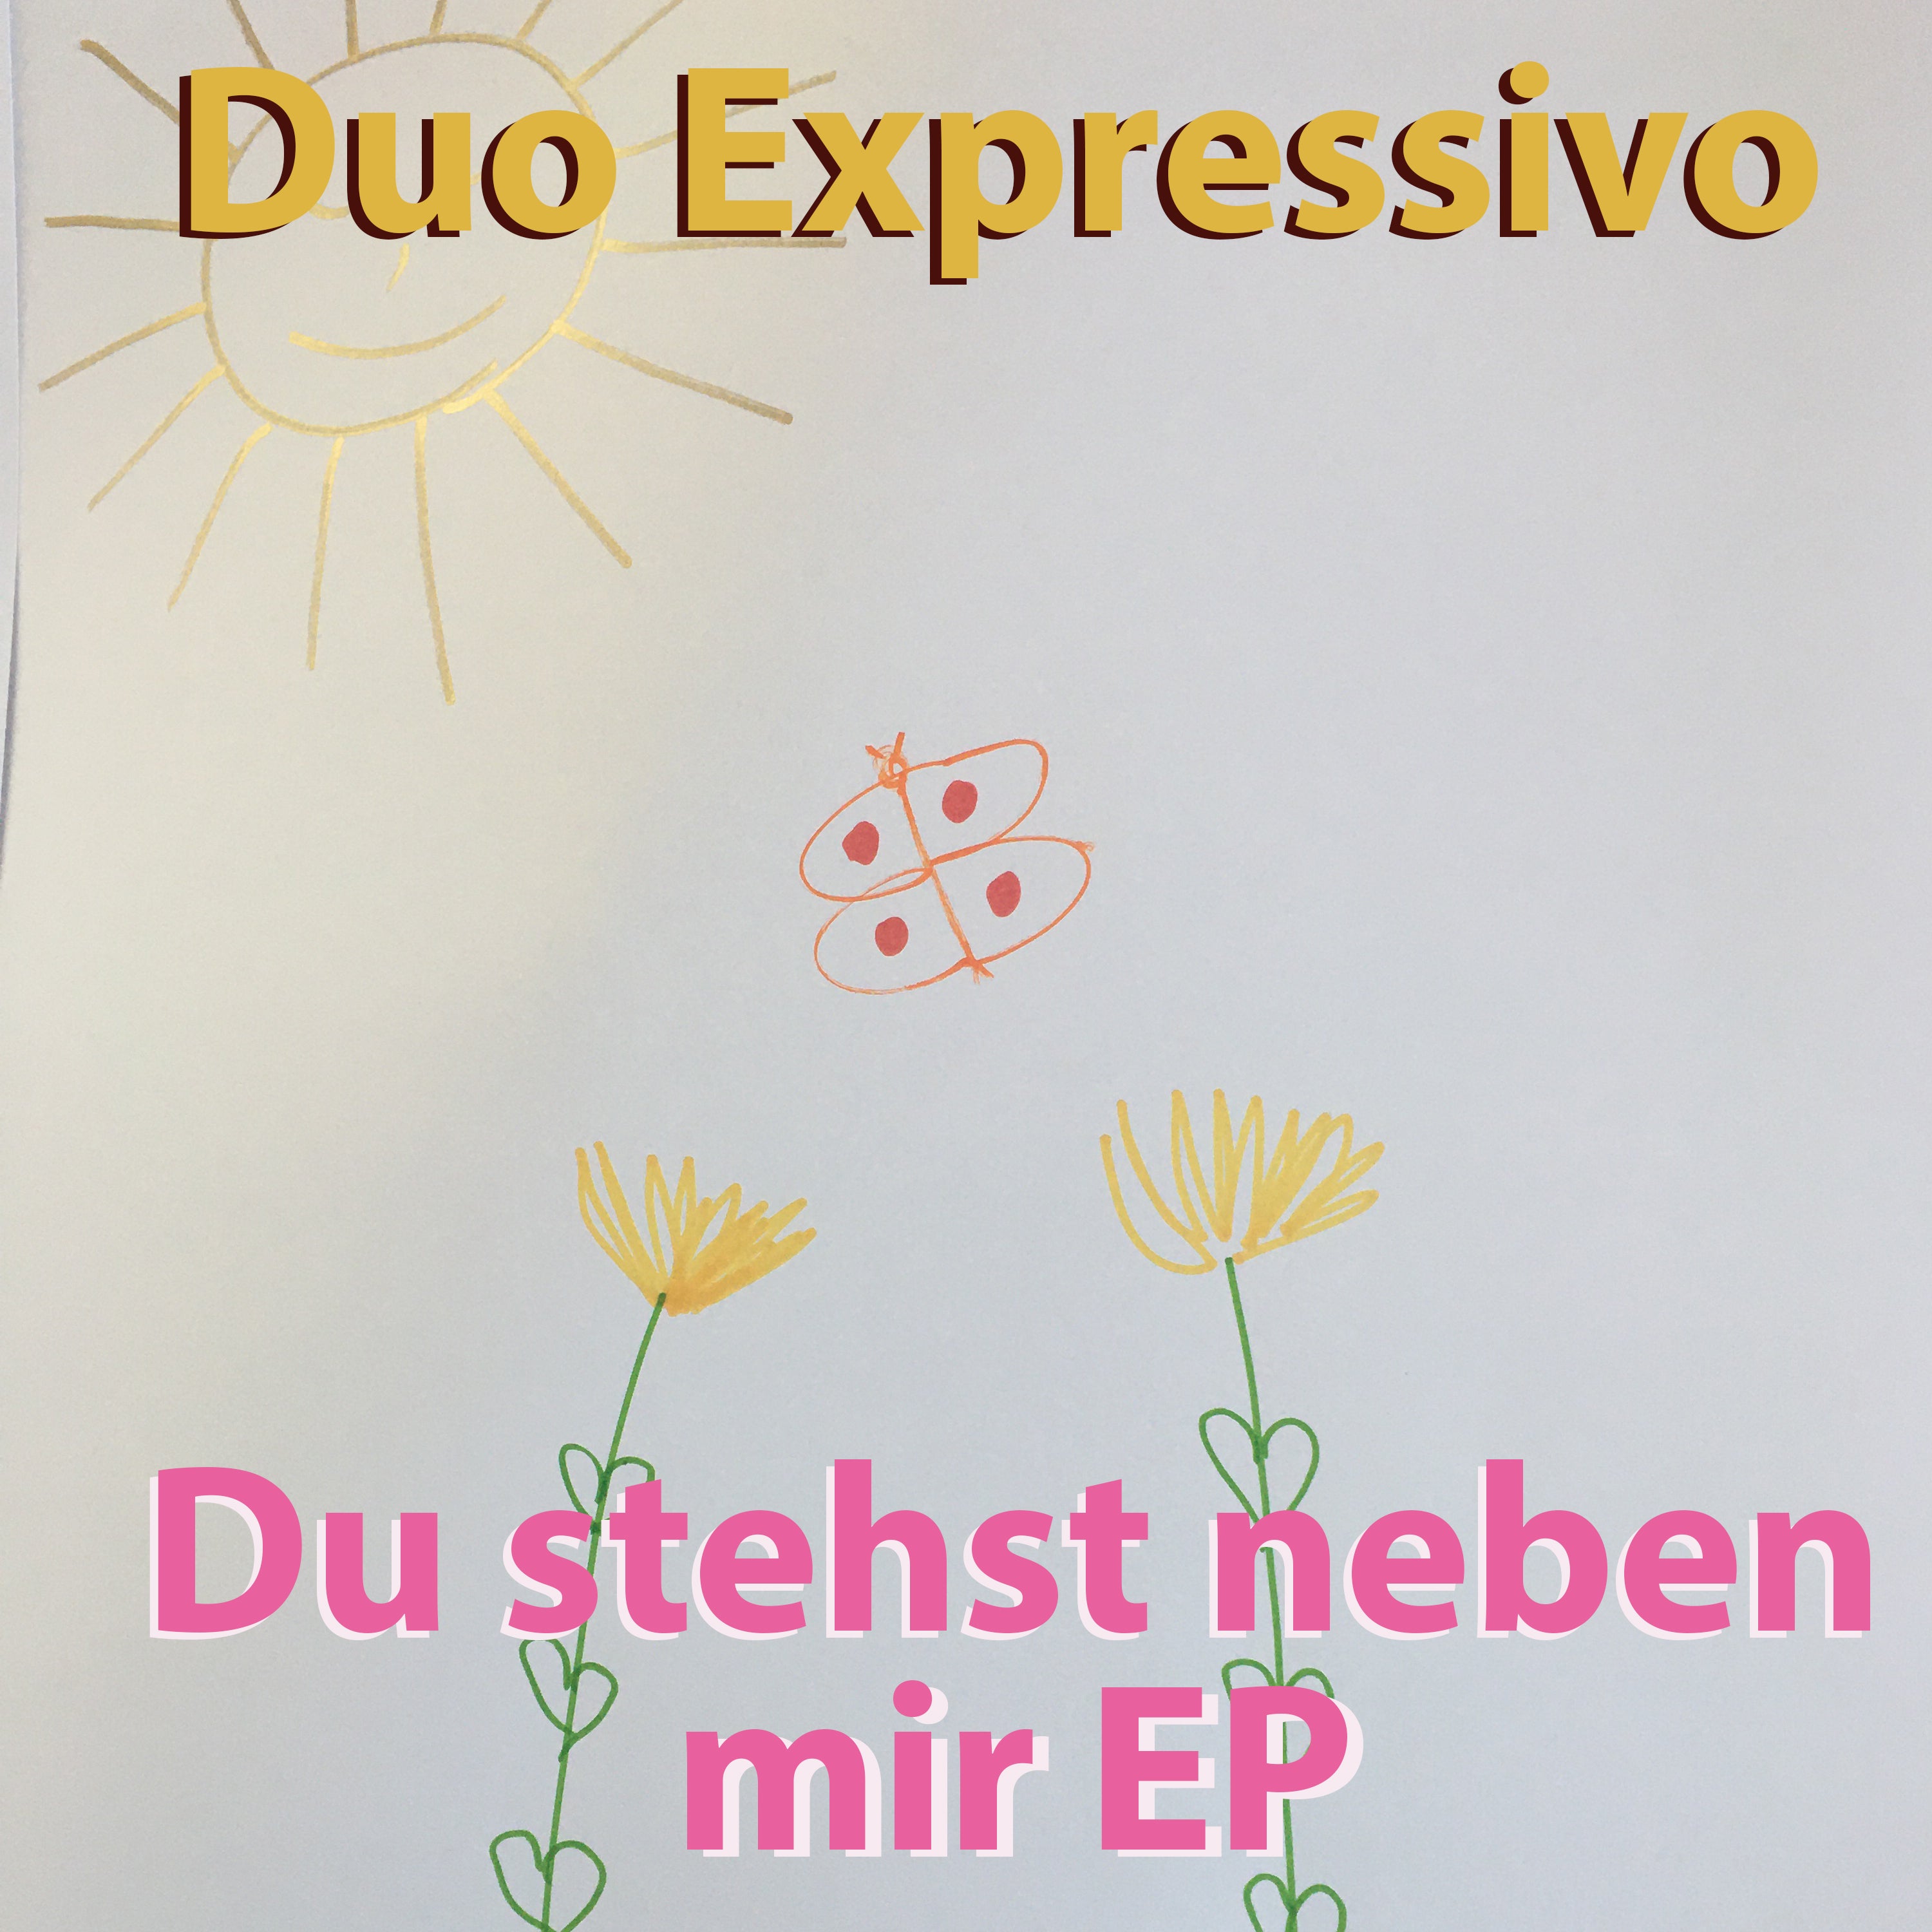 Du stehst neben mir neue EP von Duo Expressivo in HD Sound inklusive lyrics, Cover und Foto Footage